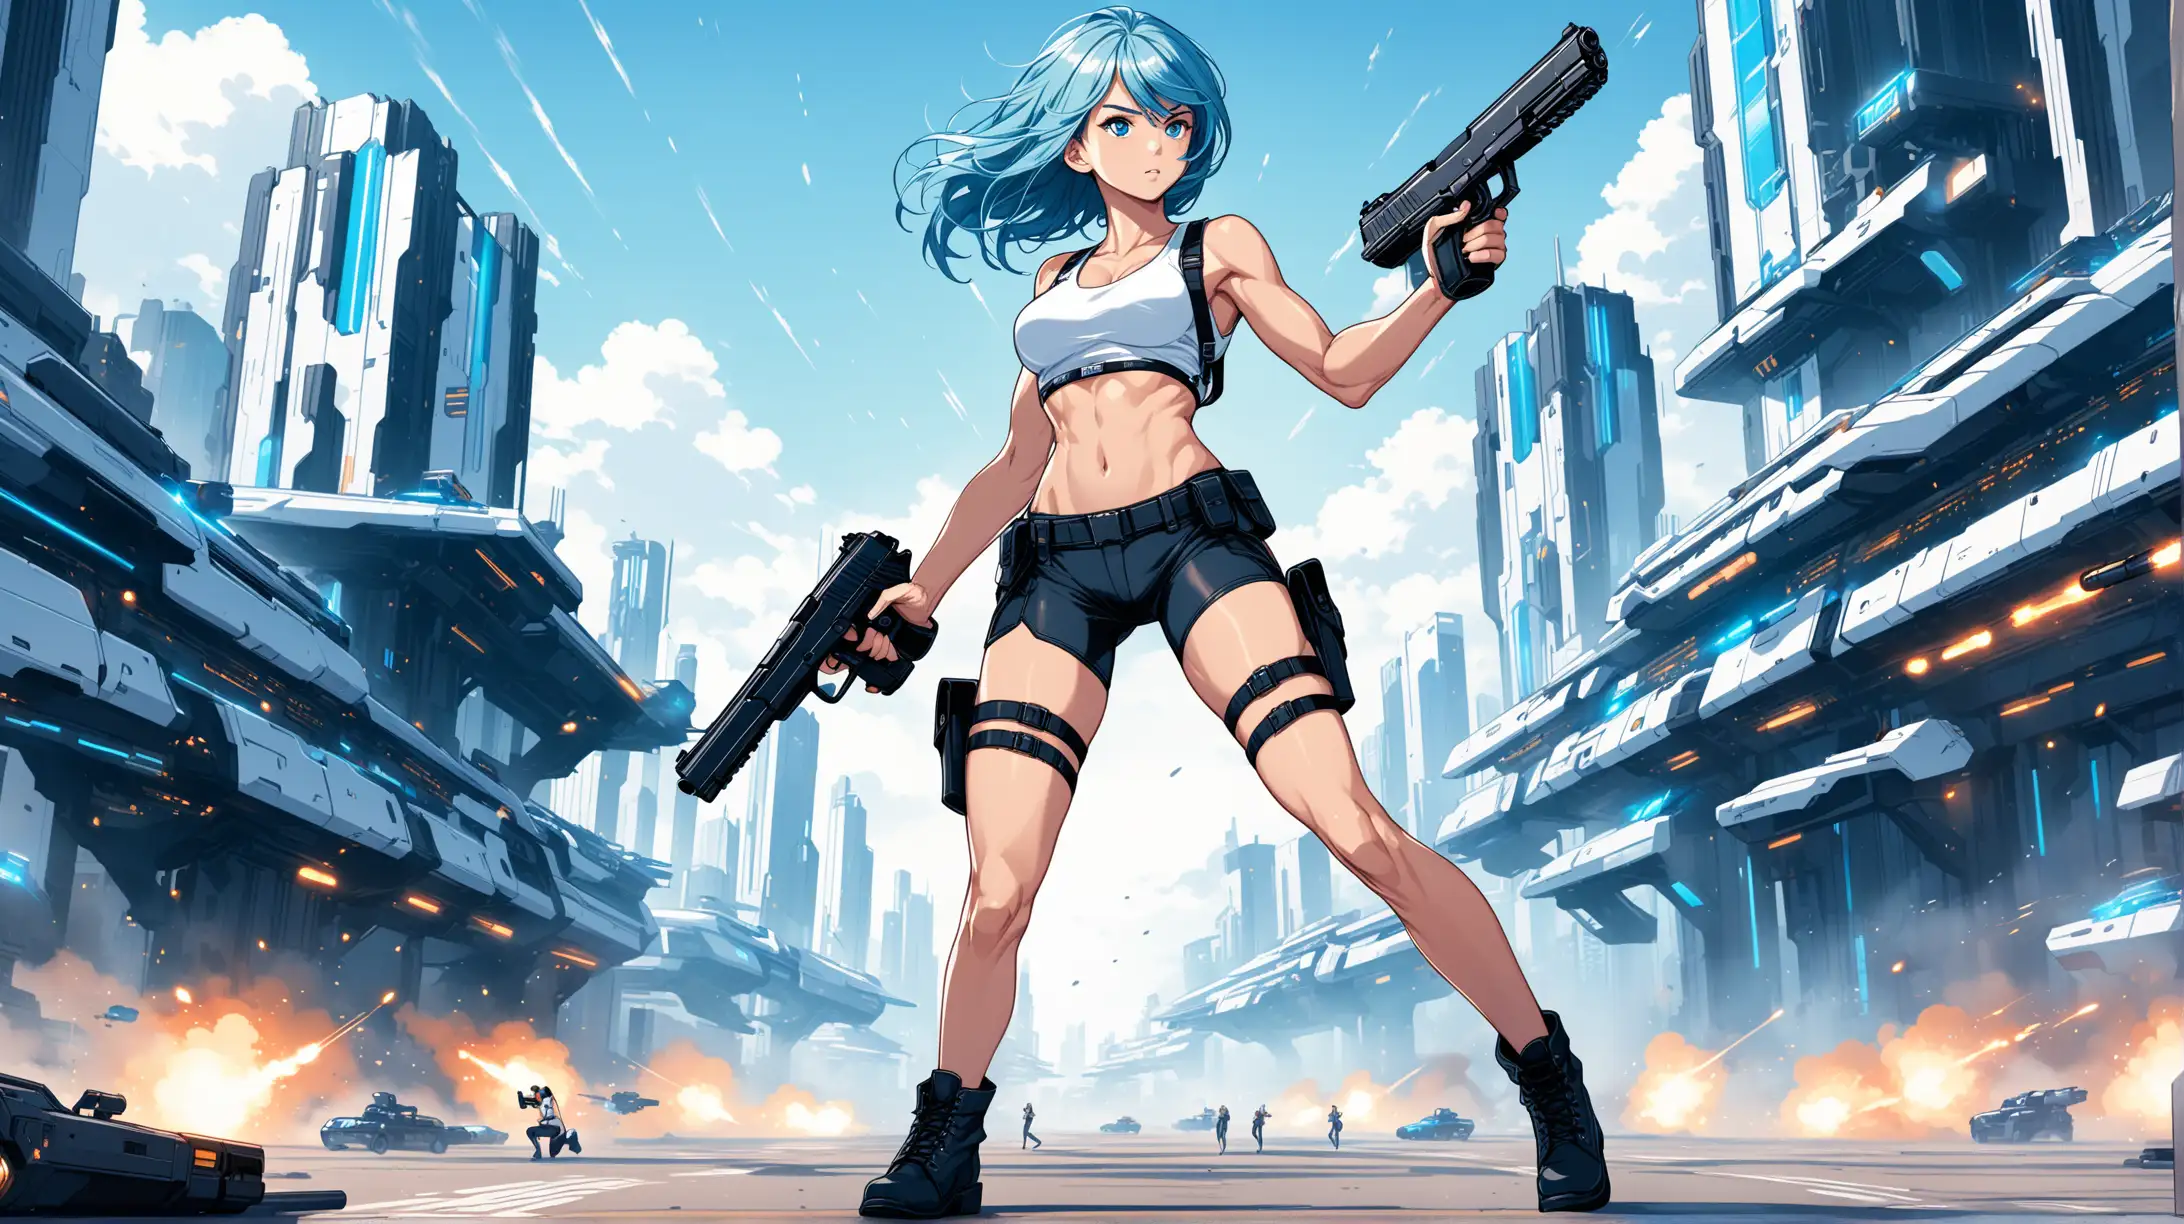 Futuristic Heroine with Blue Hair Firing Handguns in Urban Setting